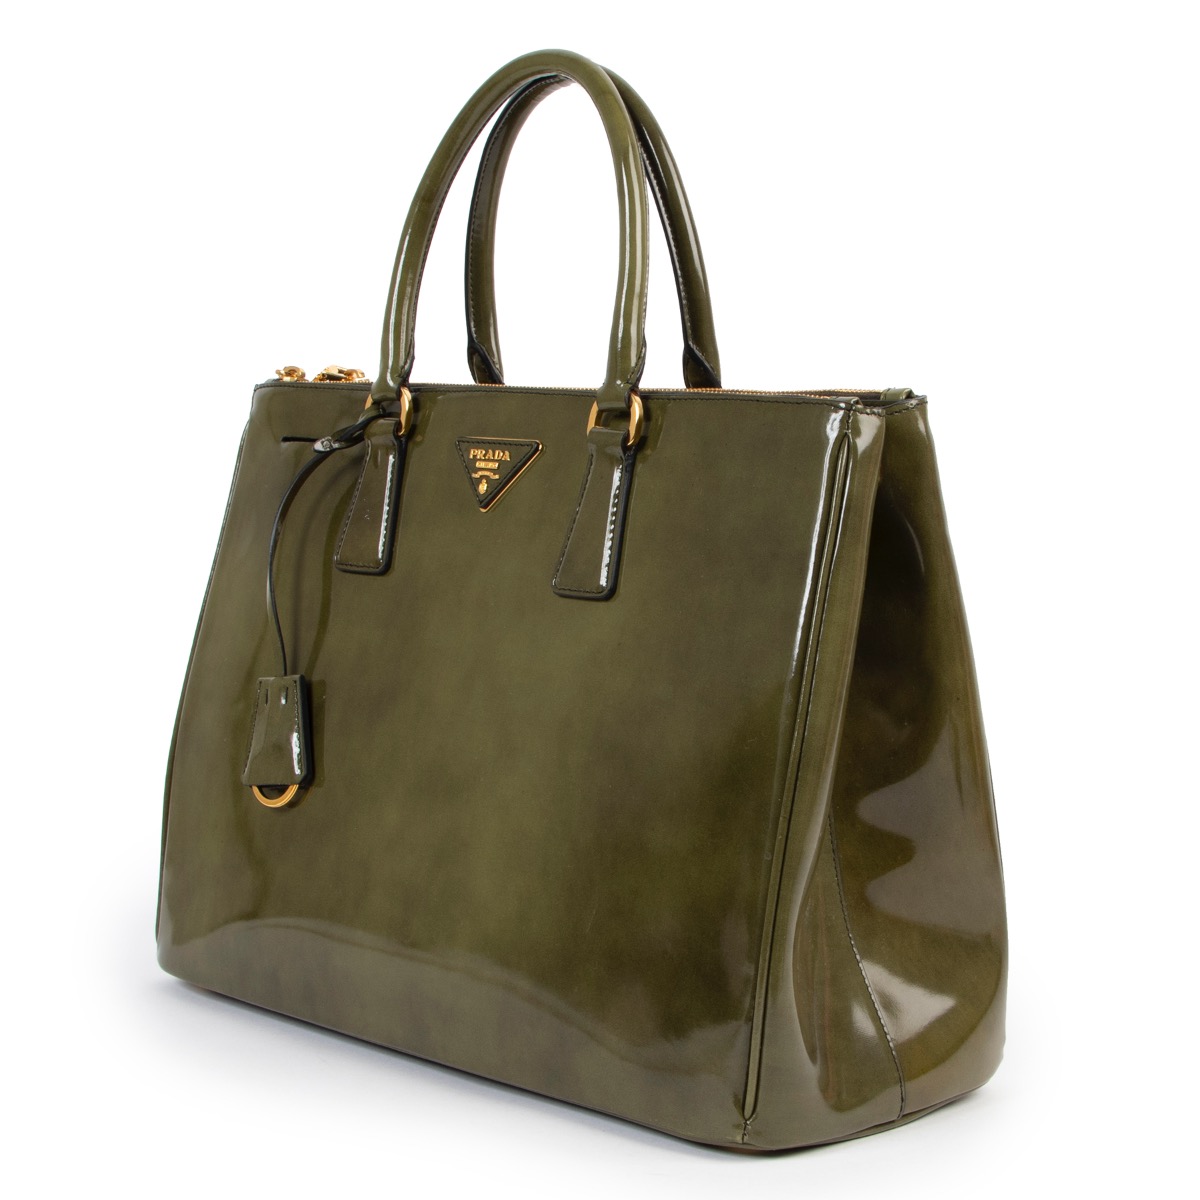 Prada Galleria Large Bag in Orange Patent Leather ref.527574